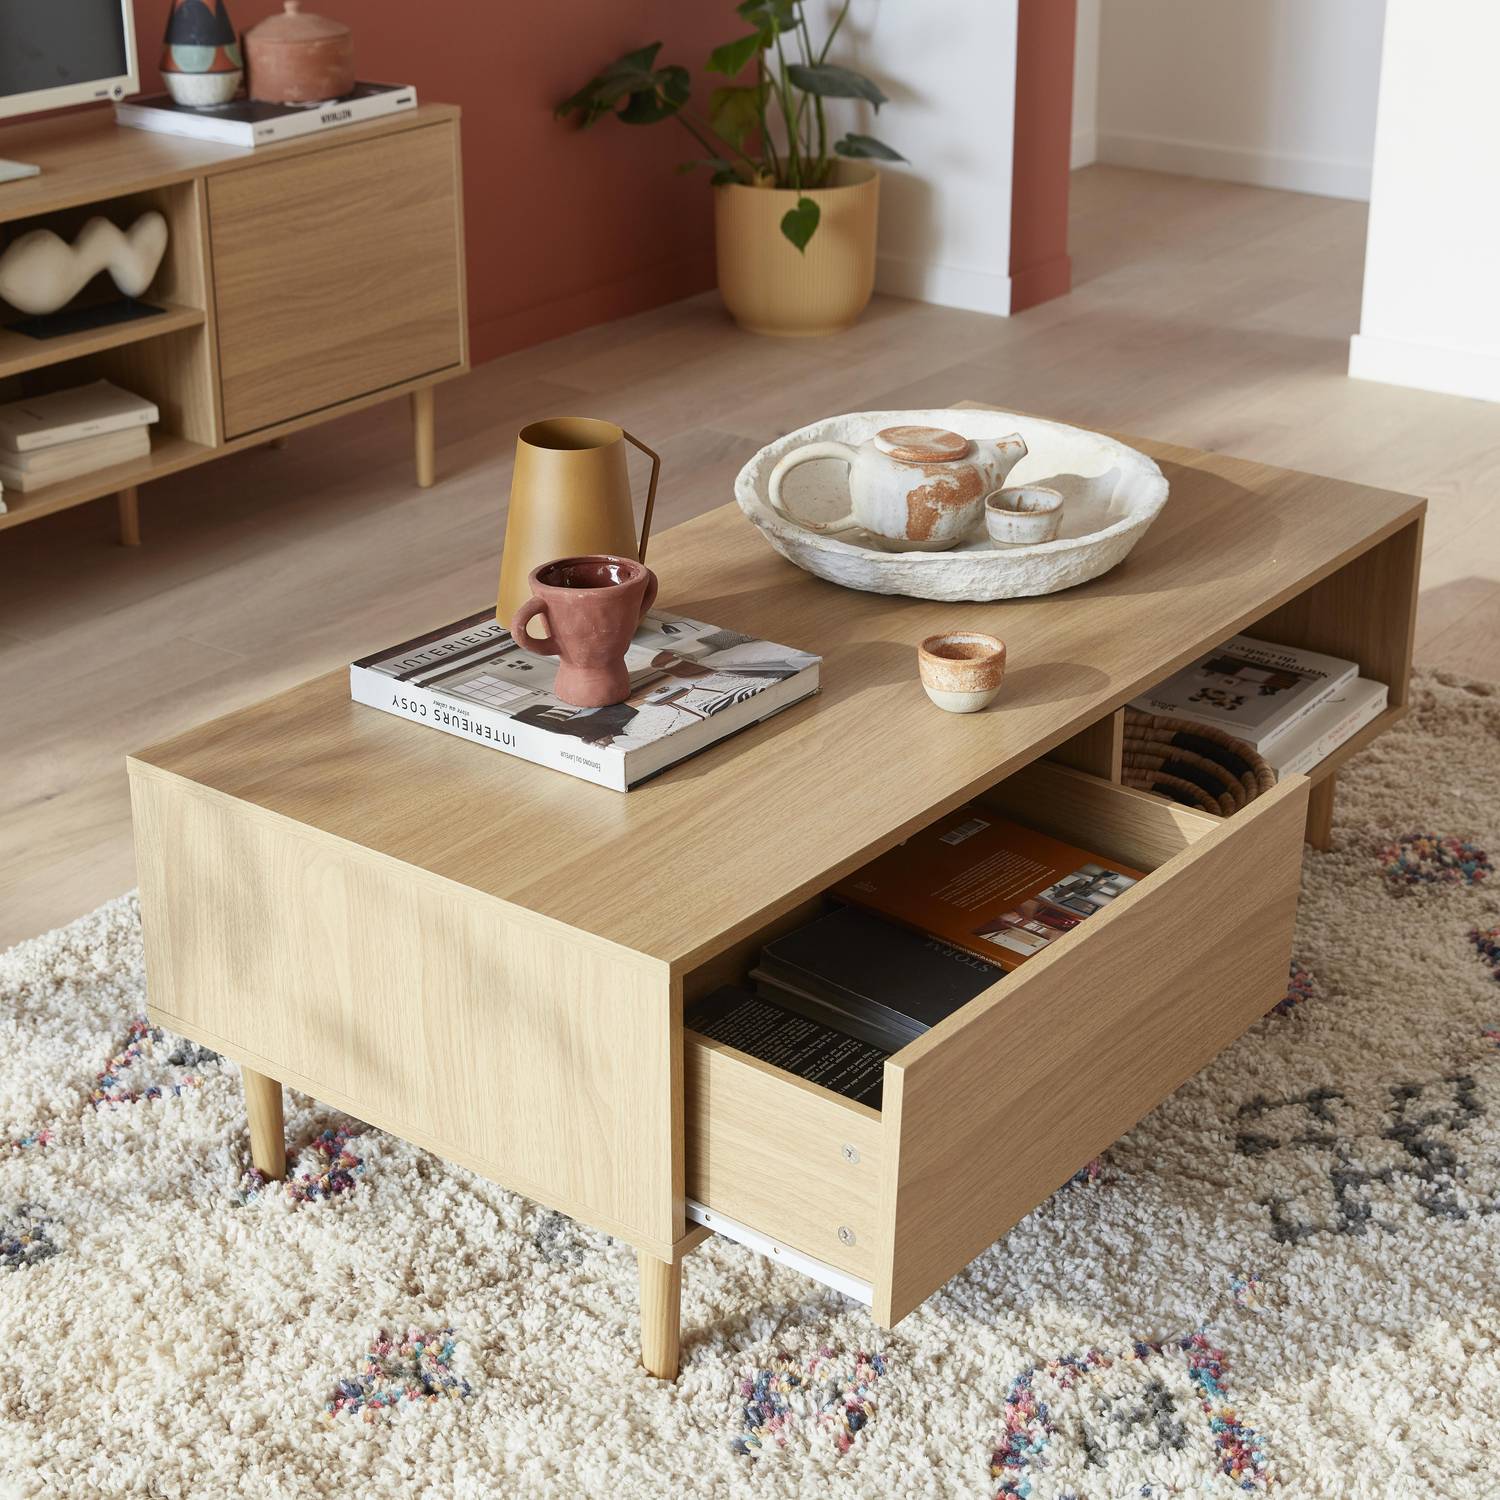 Tavolino in legno decorato - Mika - 2 cassetti, 2 vani portaoggetti, L 120 x L 55 x H 40cm Photo2